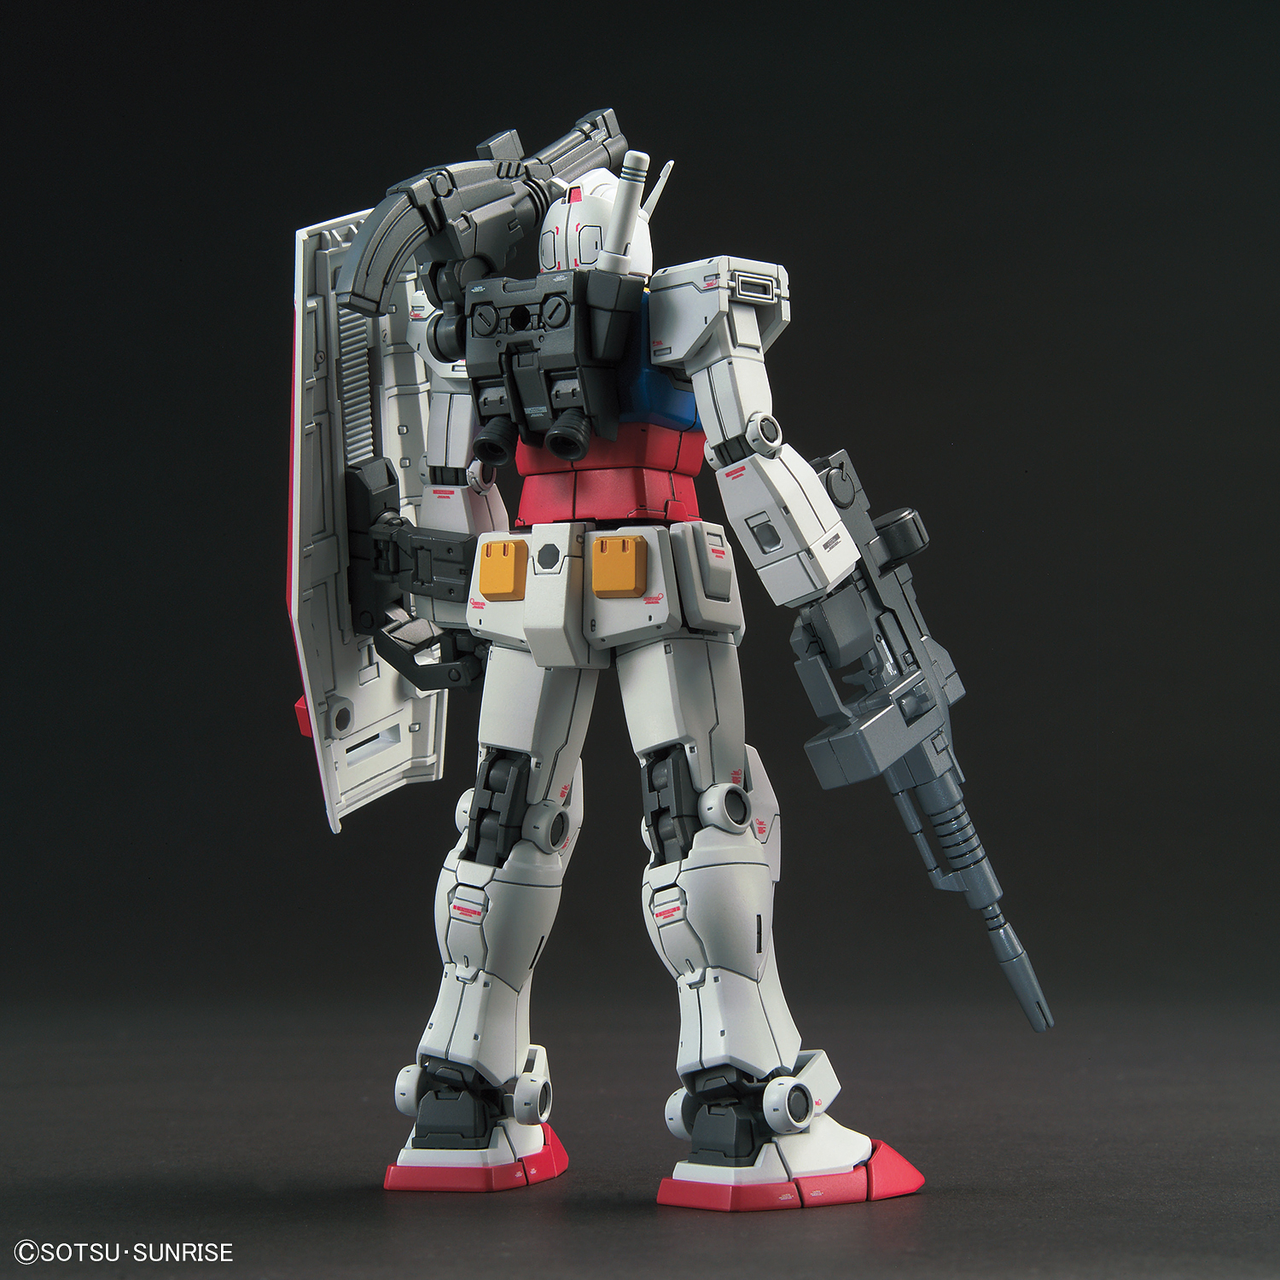 Bandai Hobby Mg 1/100 Rx 78 Gundam The Origin Model Kit,, Multicolor